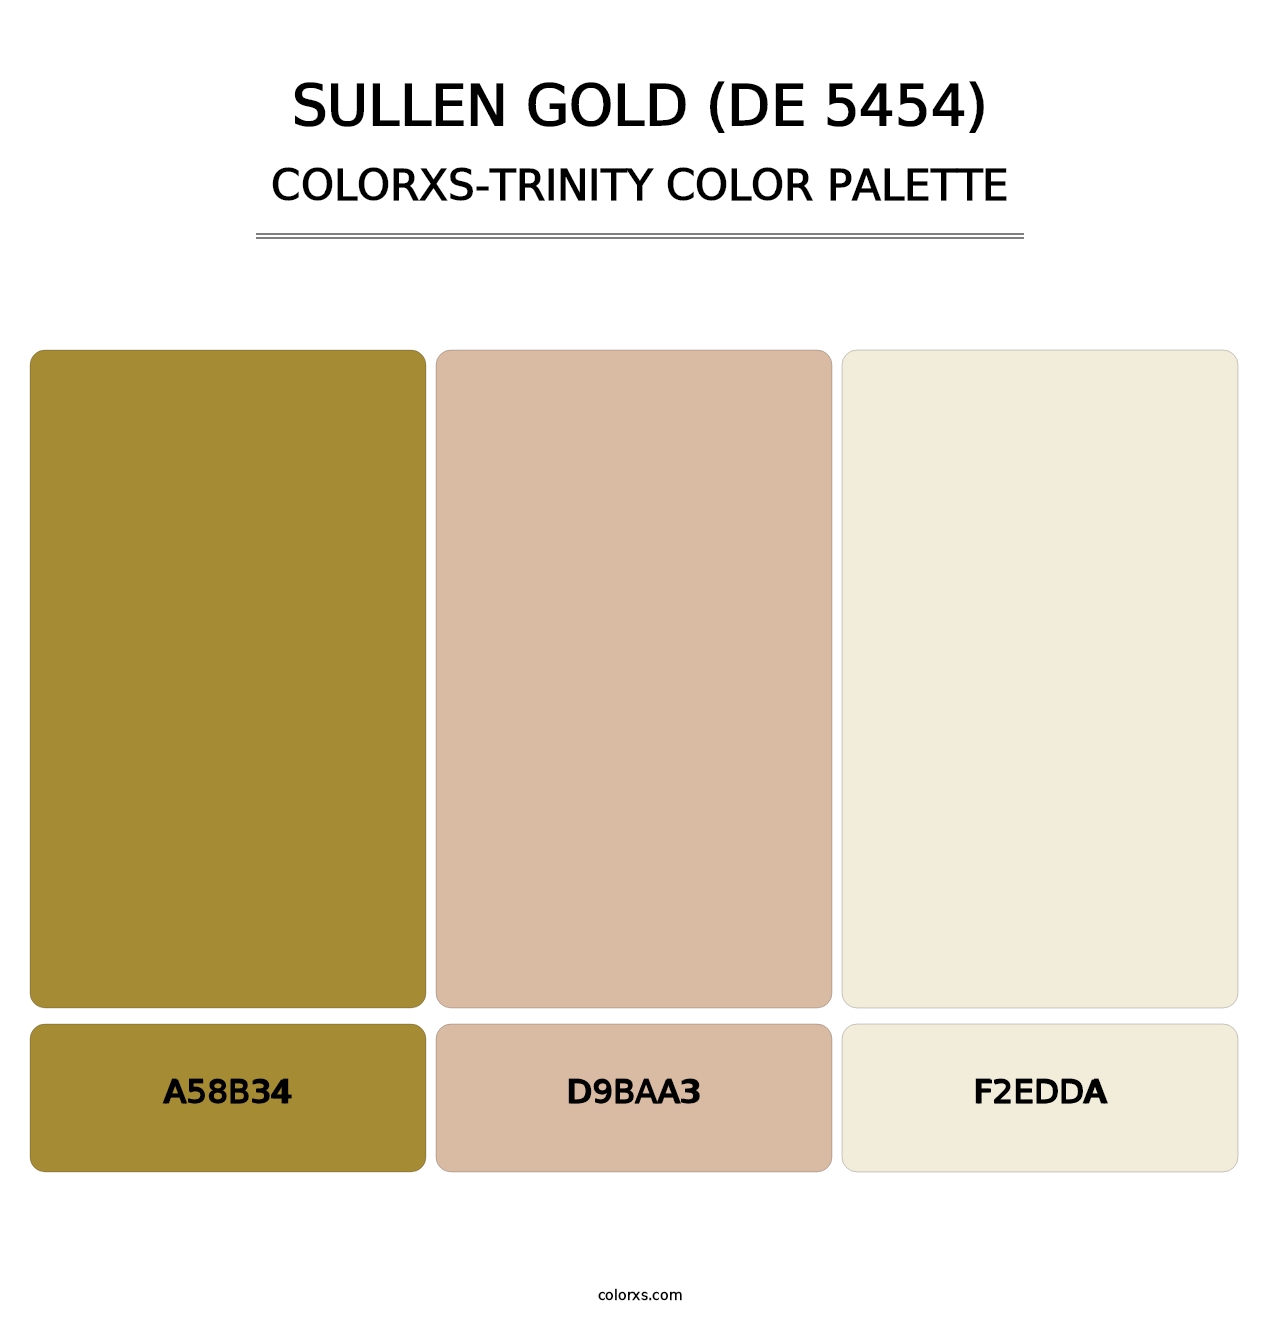 Sullen Gold (DE 5454) - Colorxs Trinity Palette